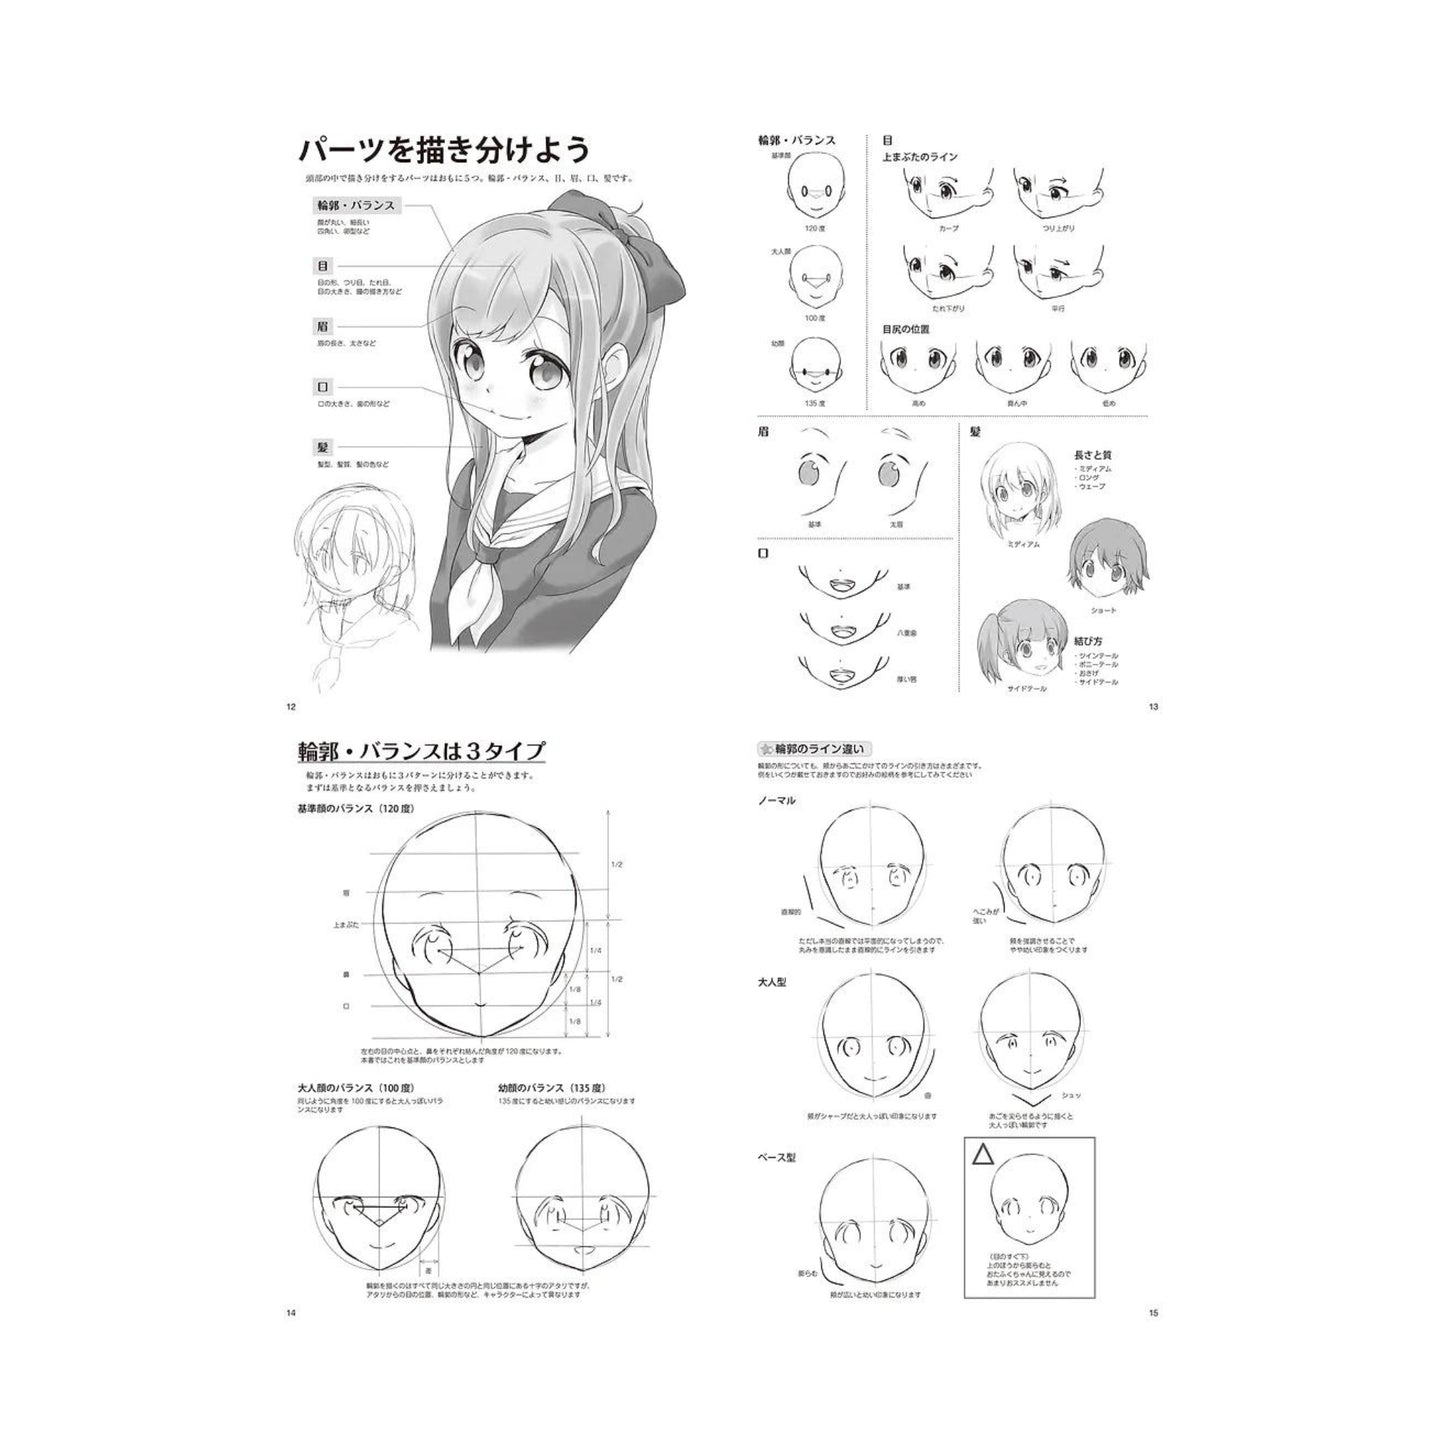 How to draw - jap. Zeichenbuch -  Moe Charas - Charakter und Emotionen